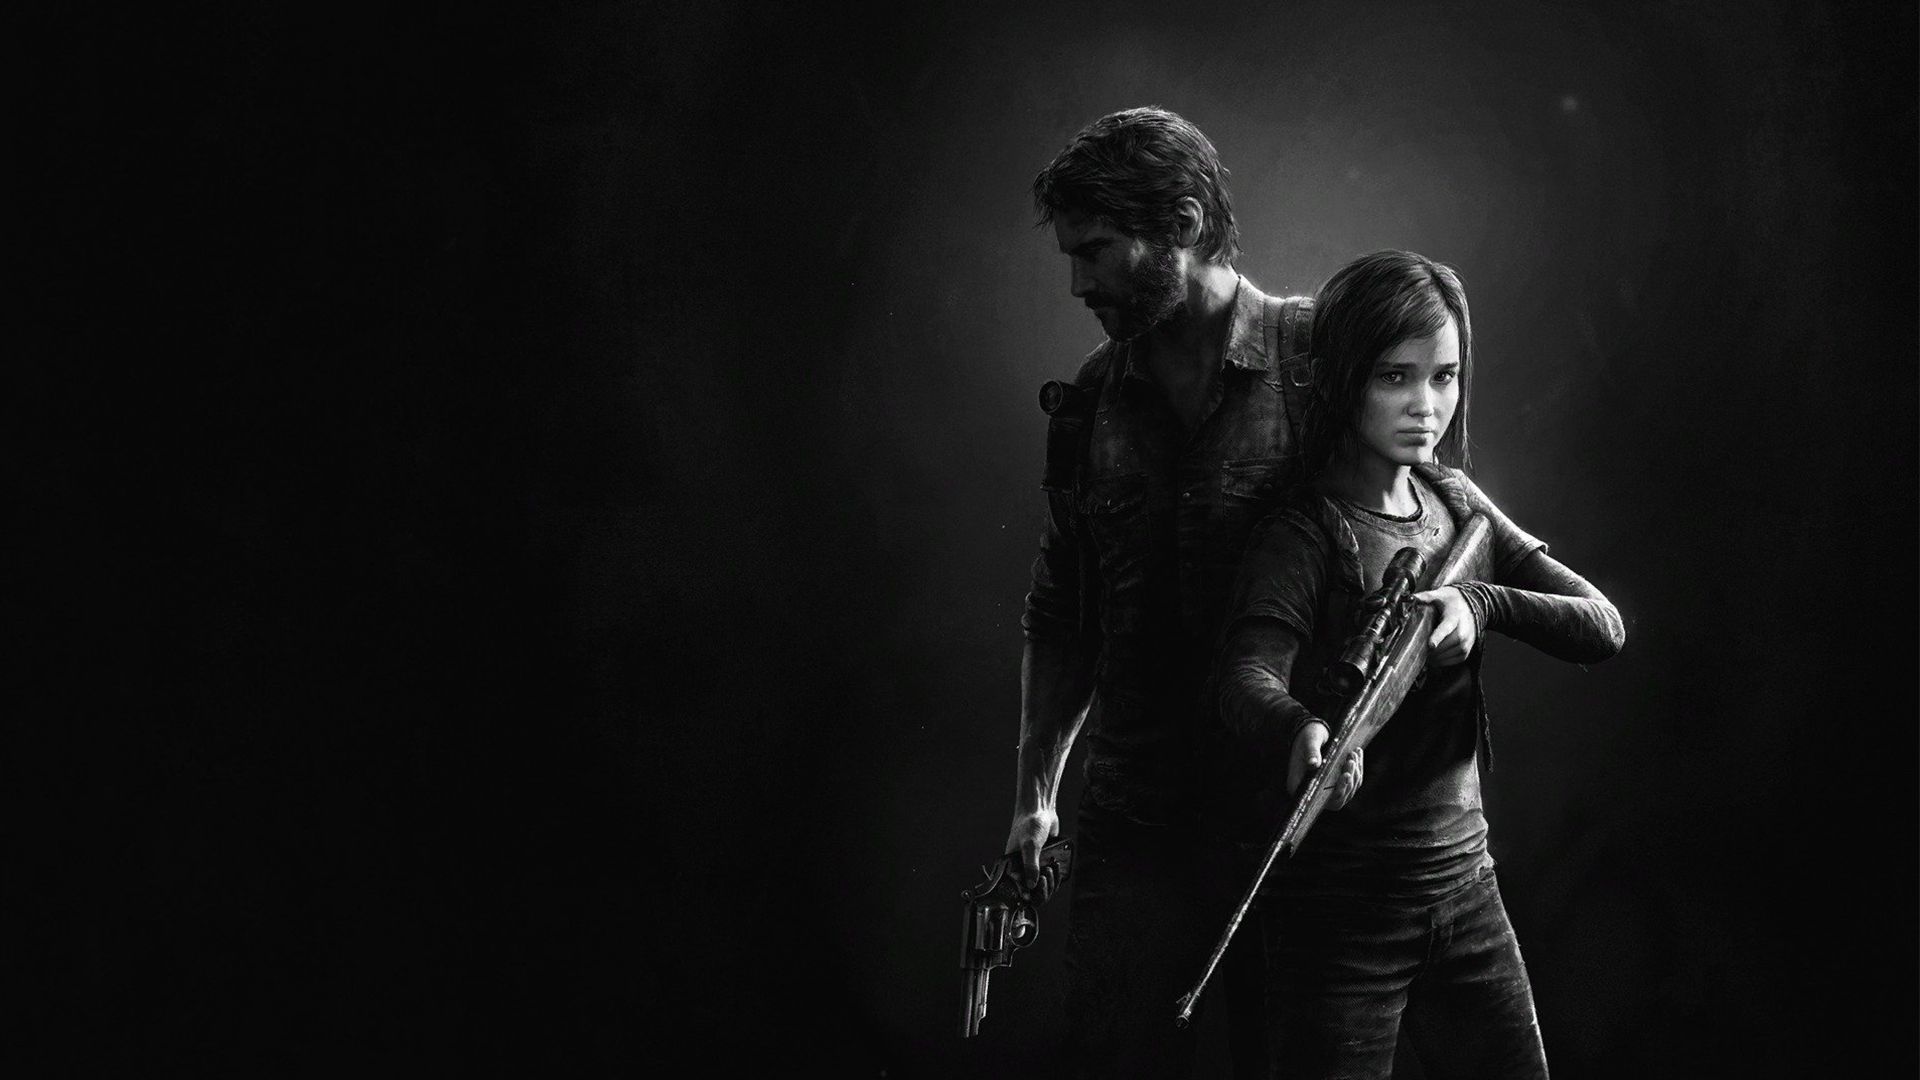 En attendant Factions et la série HBO, la franchise The Last of Us passe les 37 millions